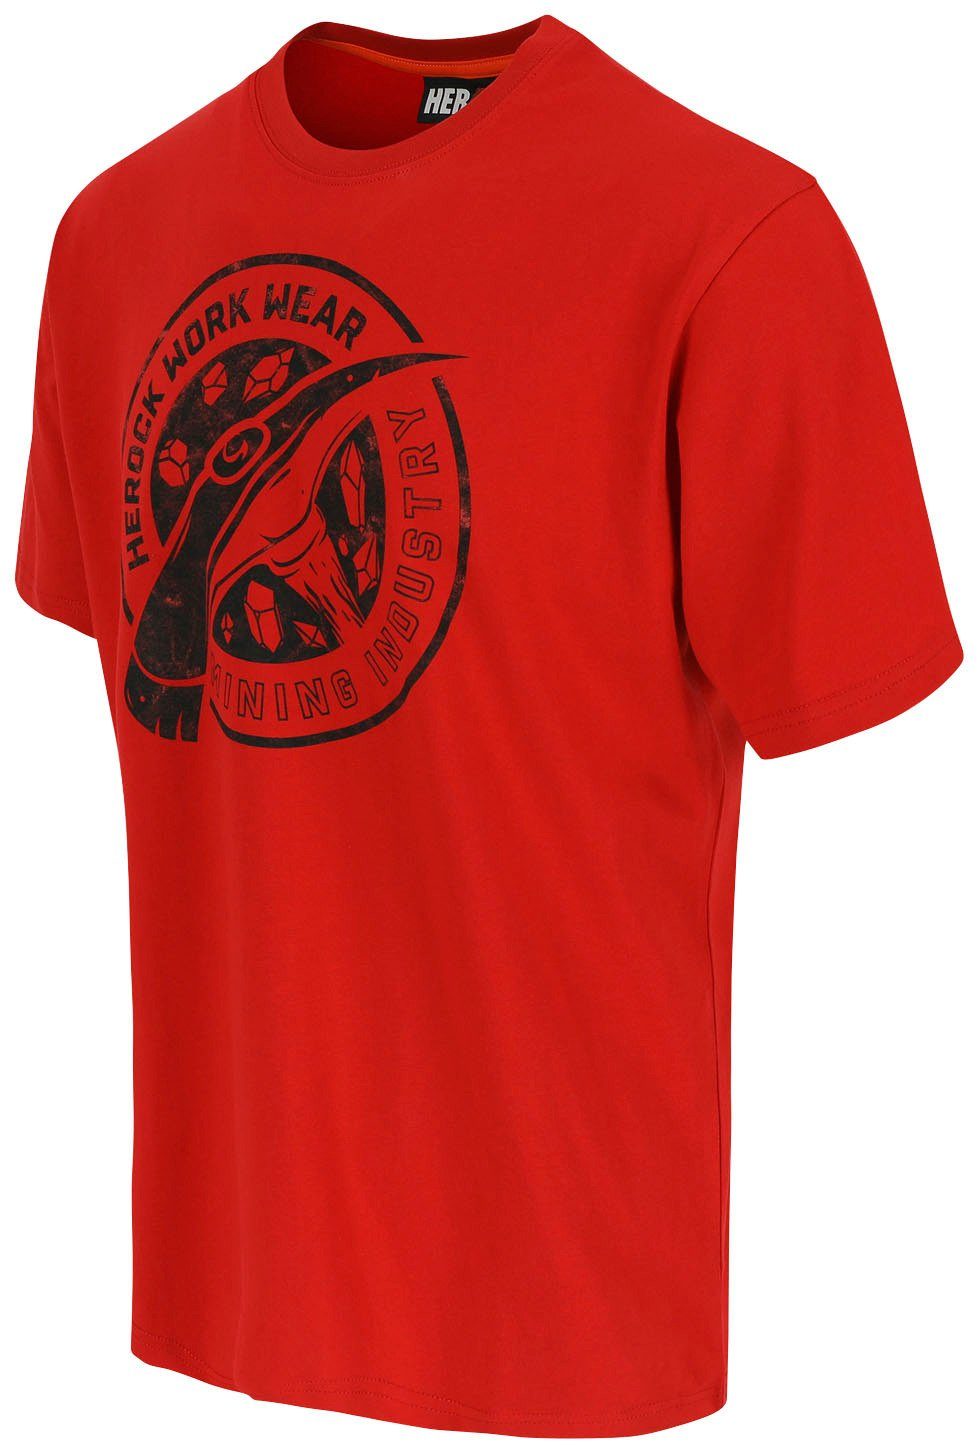 T-Shirt in Limited verschiedene rot Farben erhältlich Worker Herock Edition,